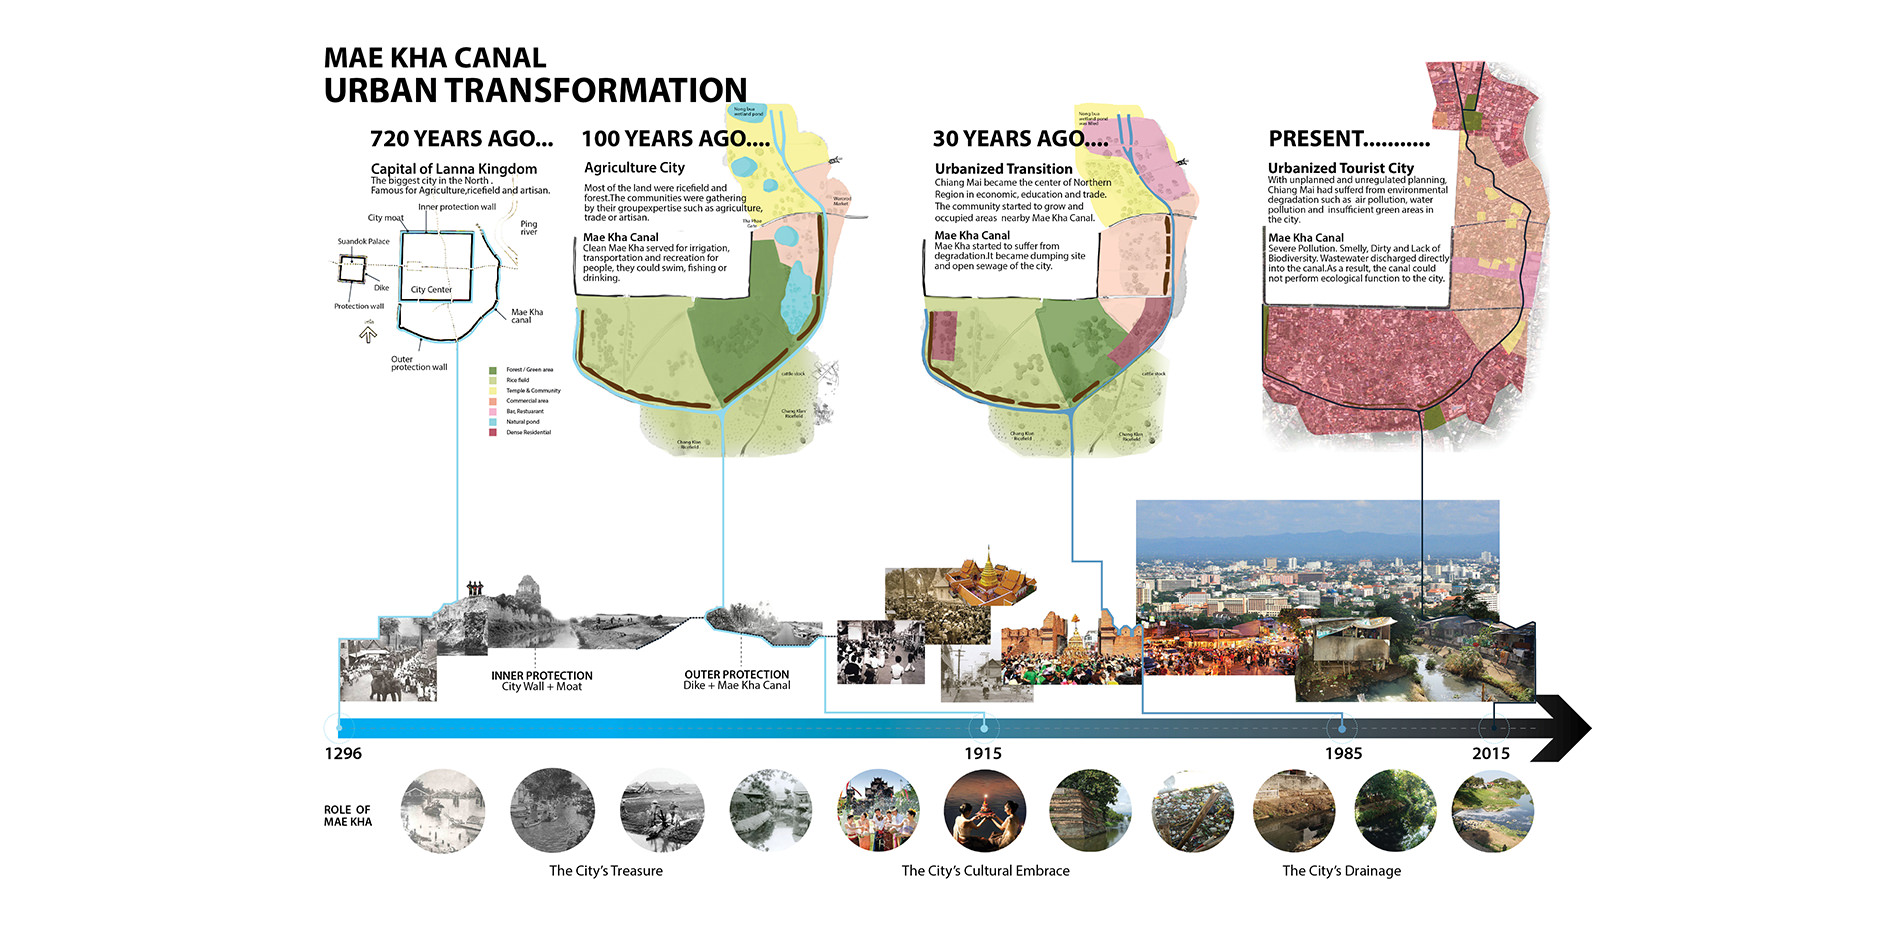 Mae Kha Canal urban transformation timeline